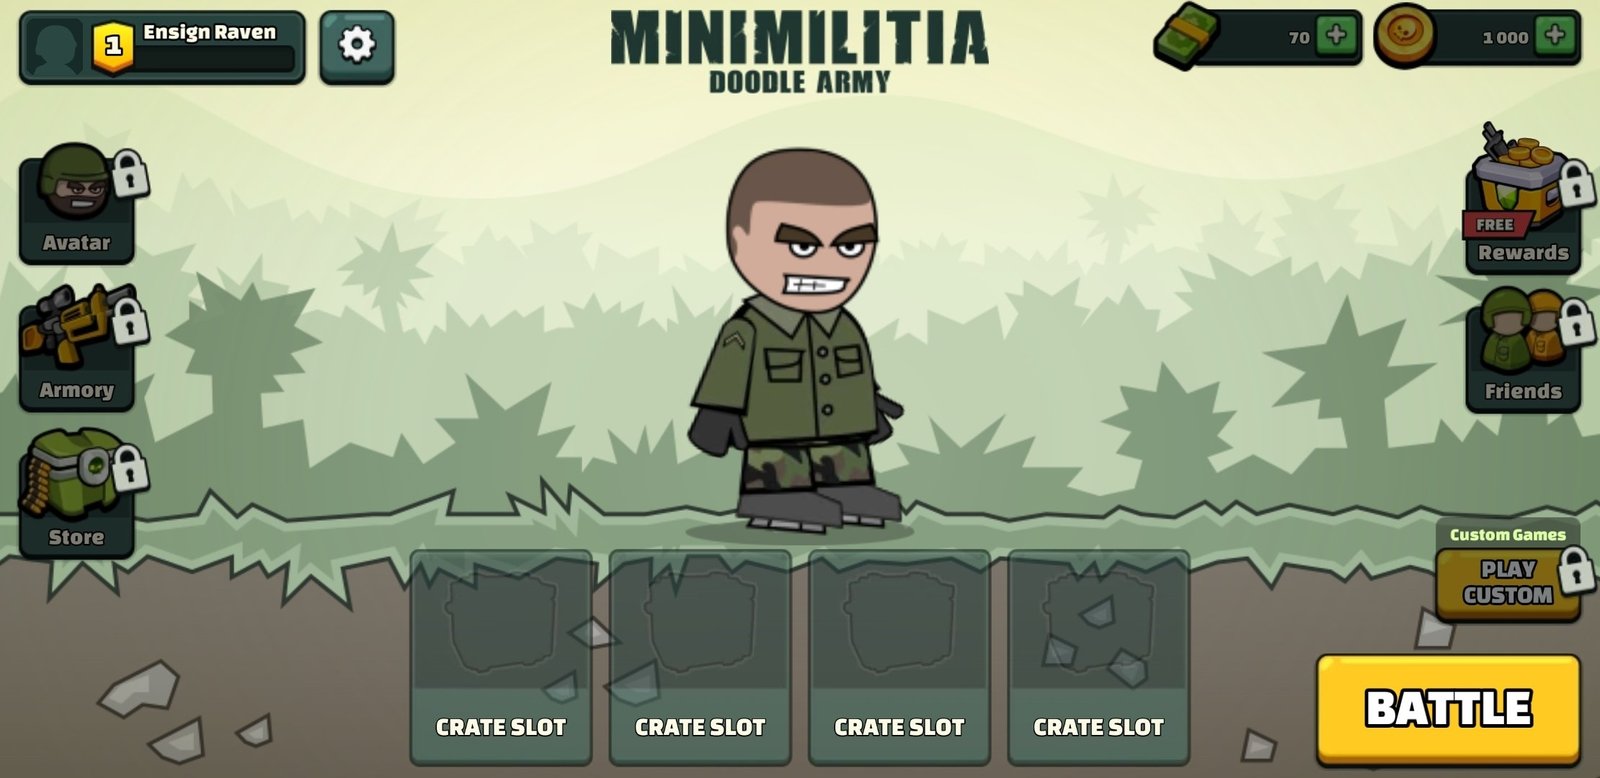 How to Play Mini Militia